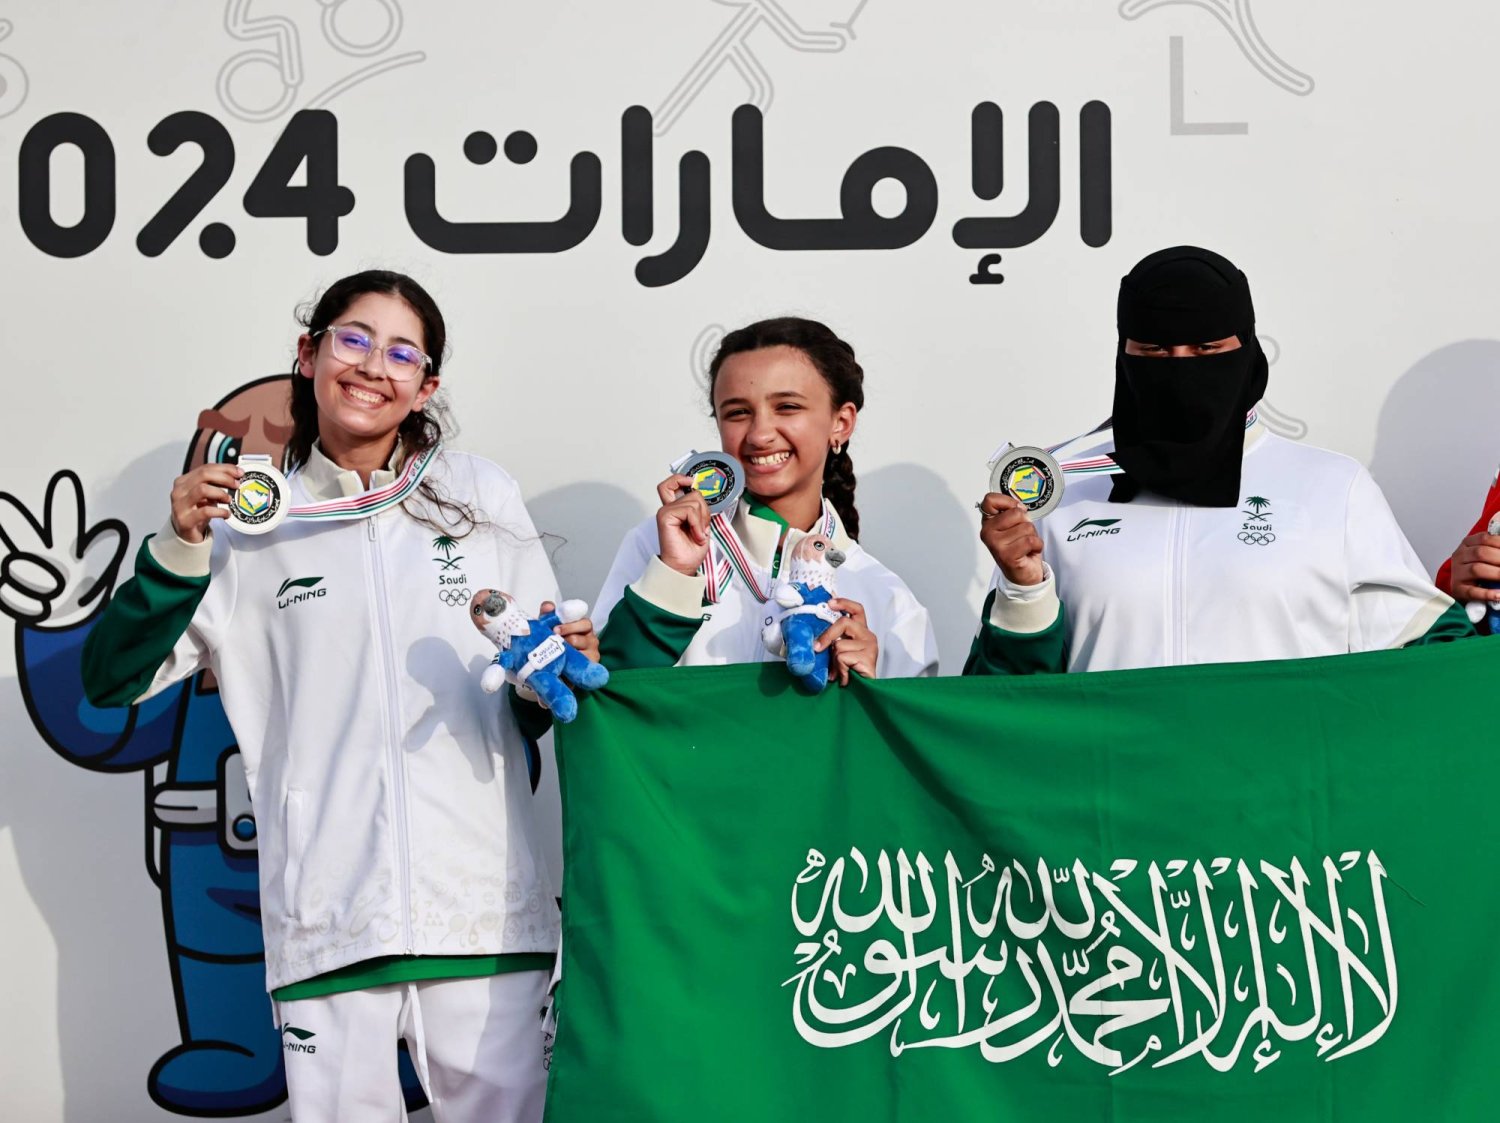 البعثة السعودية حلّت ثانياً على مستوى الدورة بتحقيقها 143 ميدالية و6 ميداليات بارالمبية (الشرق الأوسط)